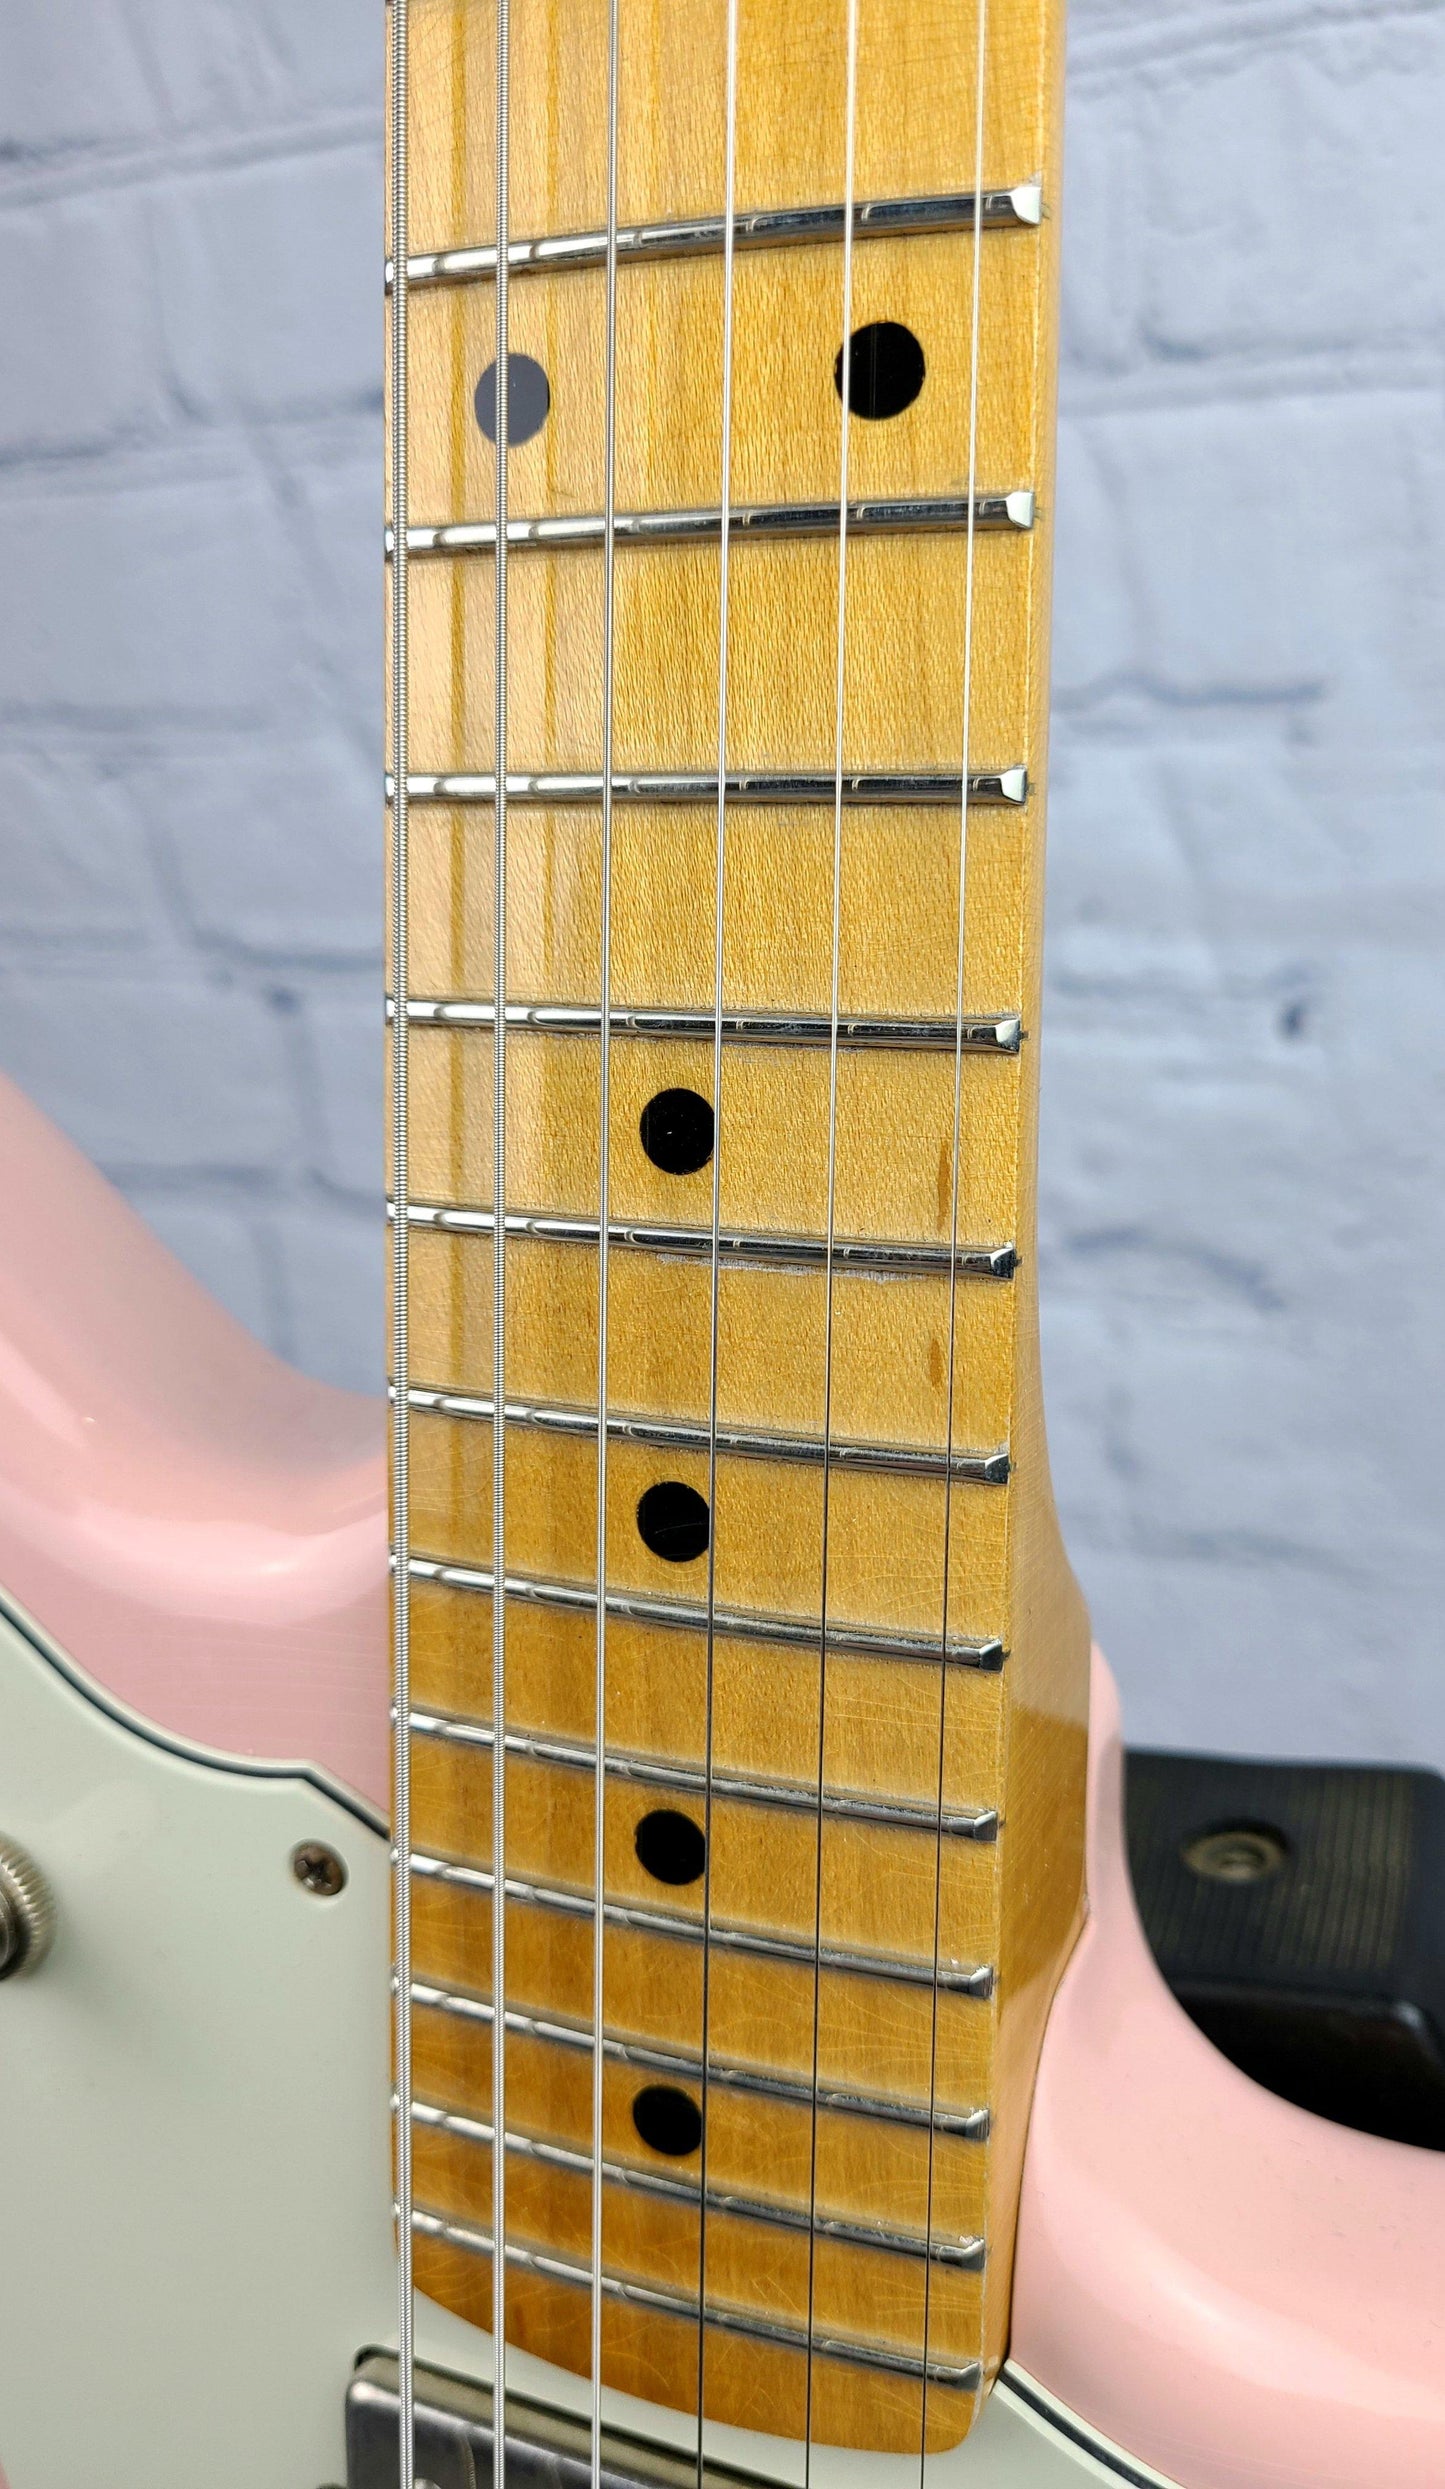 Fano JM6 Oltre Shell Pink Maple Board USA - Guitar Brando